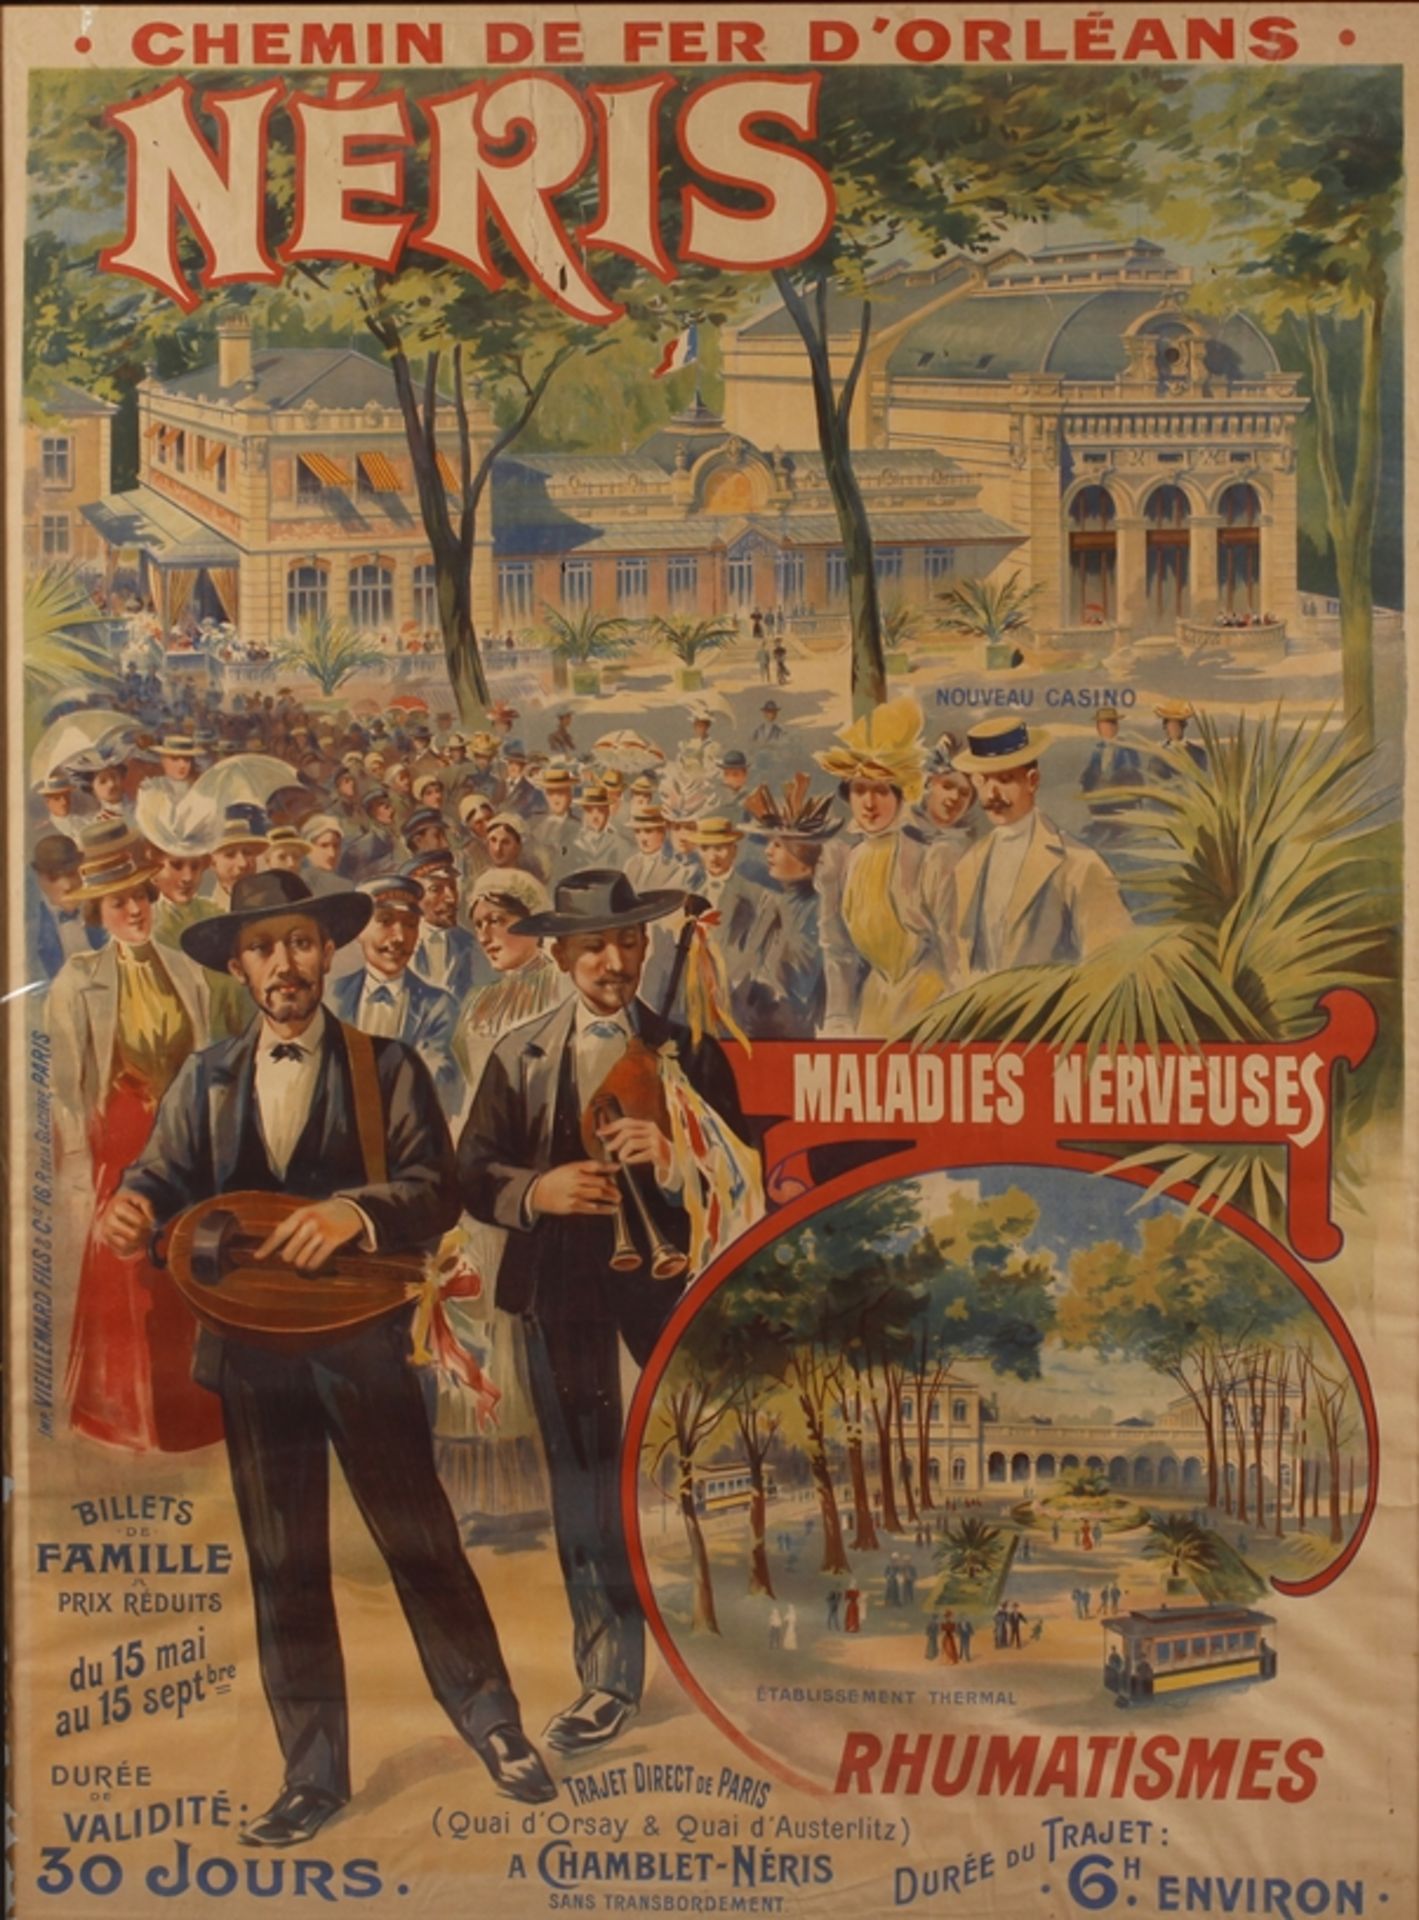 Werbeplakat der Orleans-Eisenbahn für Néris-les-Bains um 1900, großformatiges Werbeplakat der